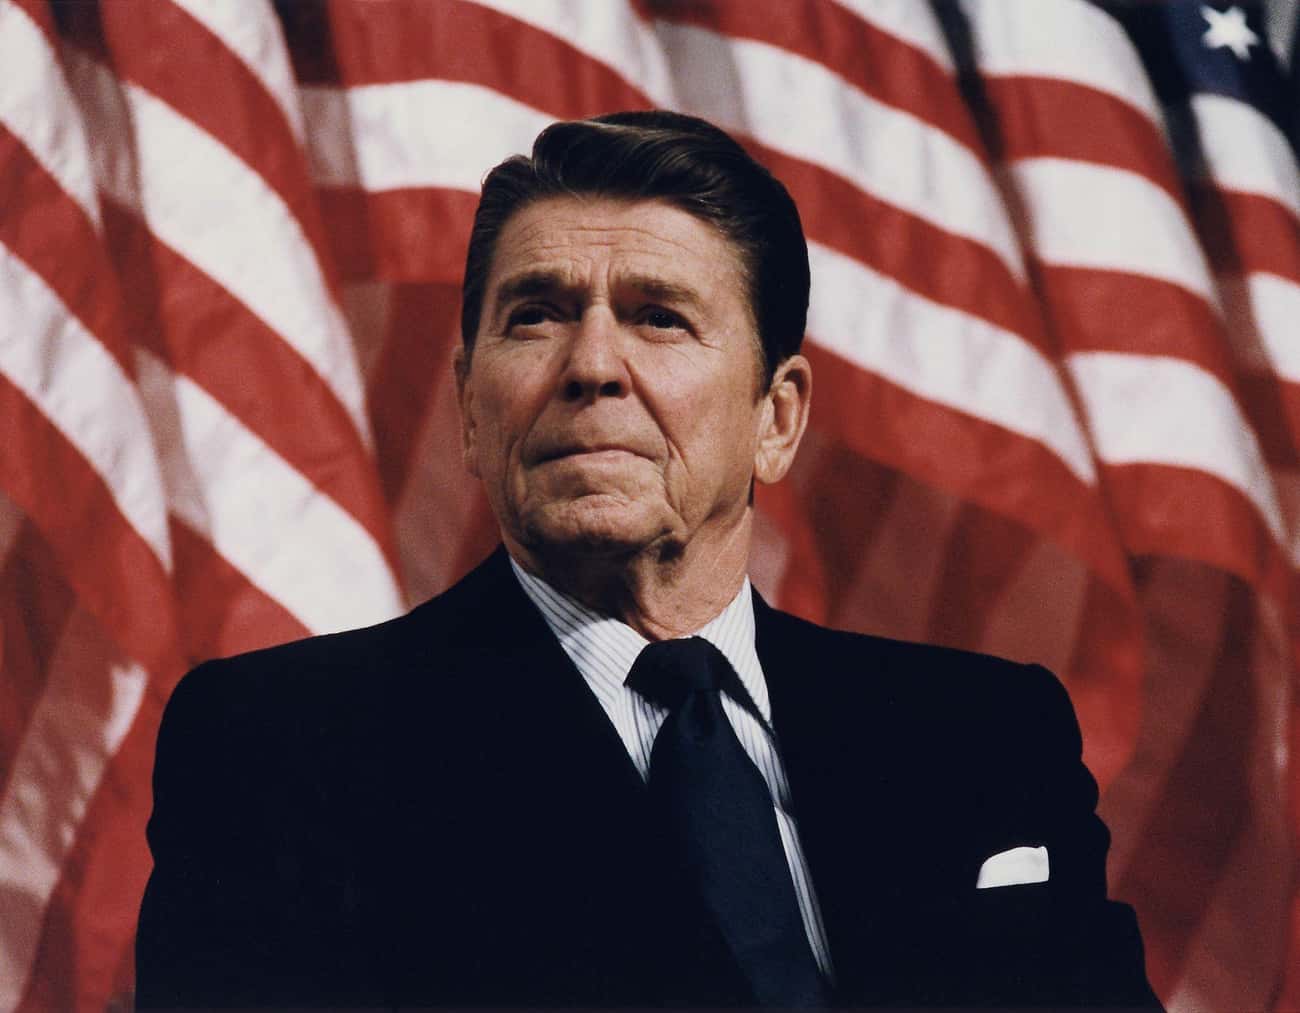 Ronald Reagan's First Inaugural